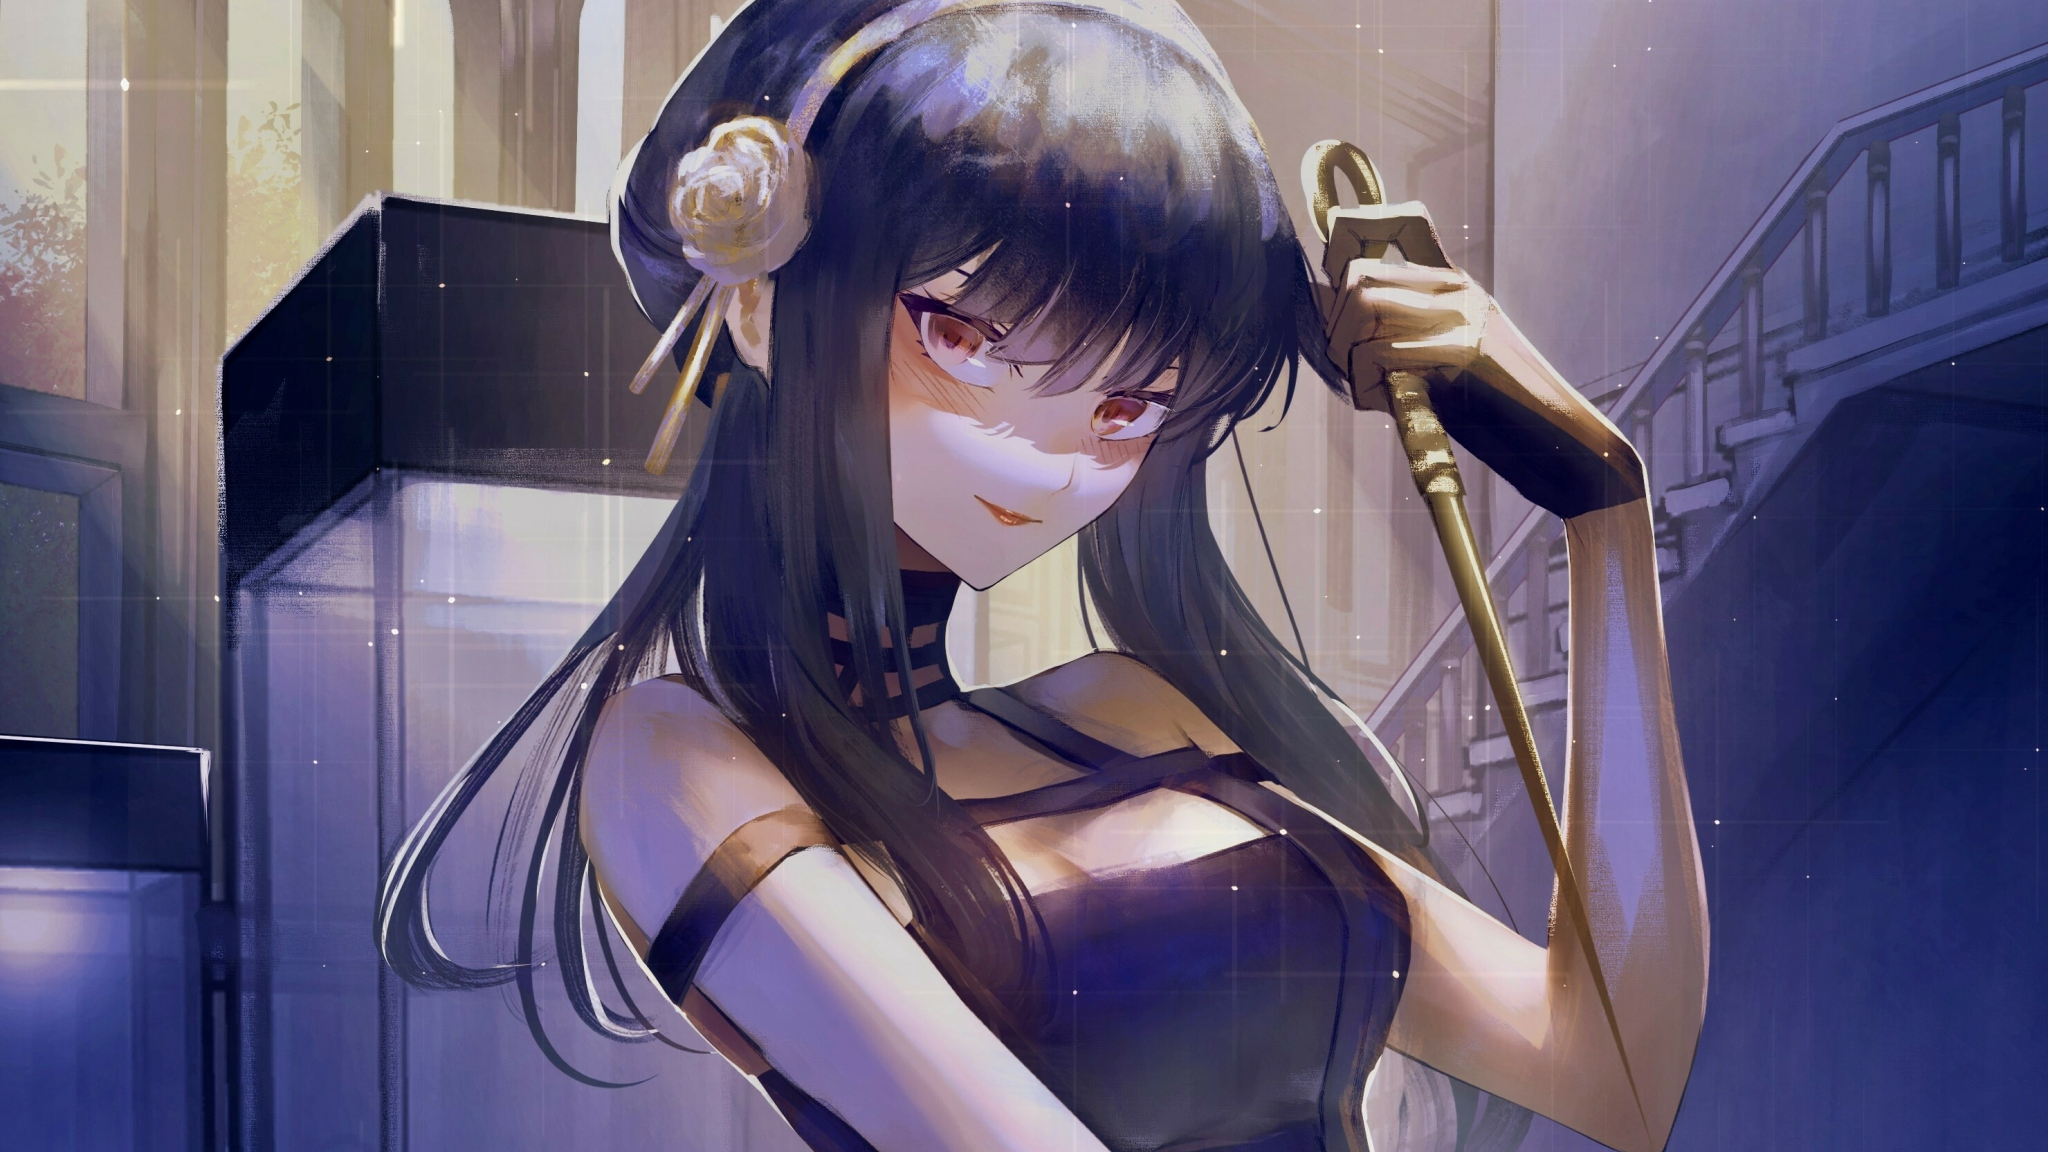 Yor forger, spy, anime girl, 2048x1152 wallpaper